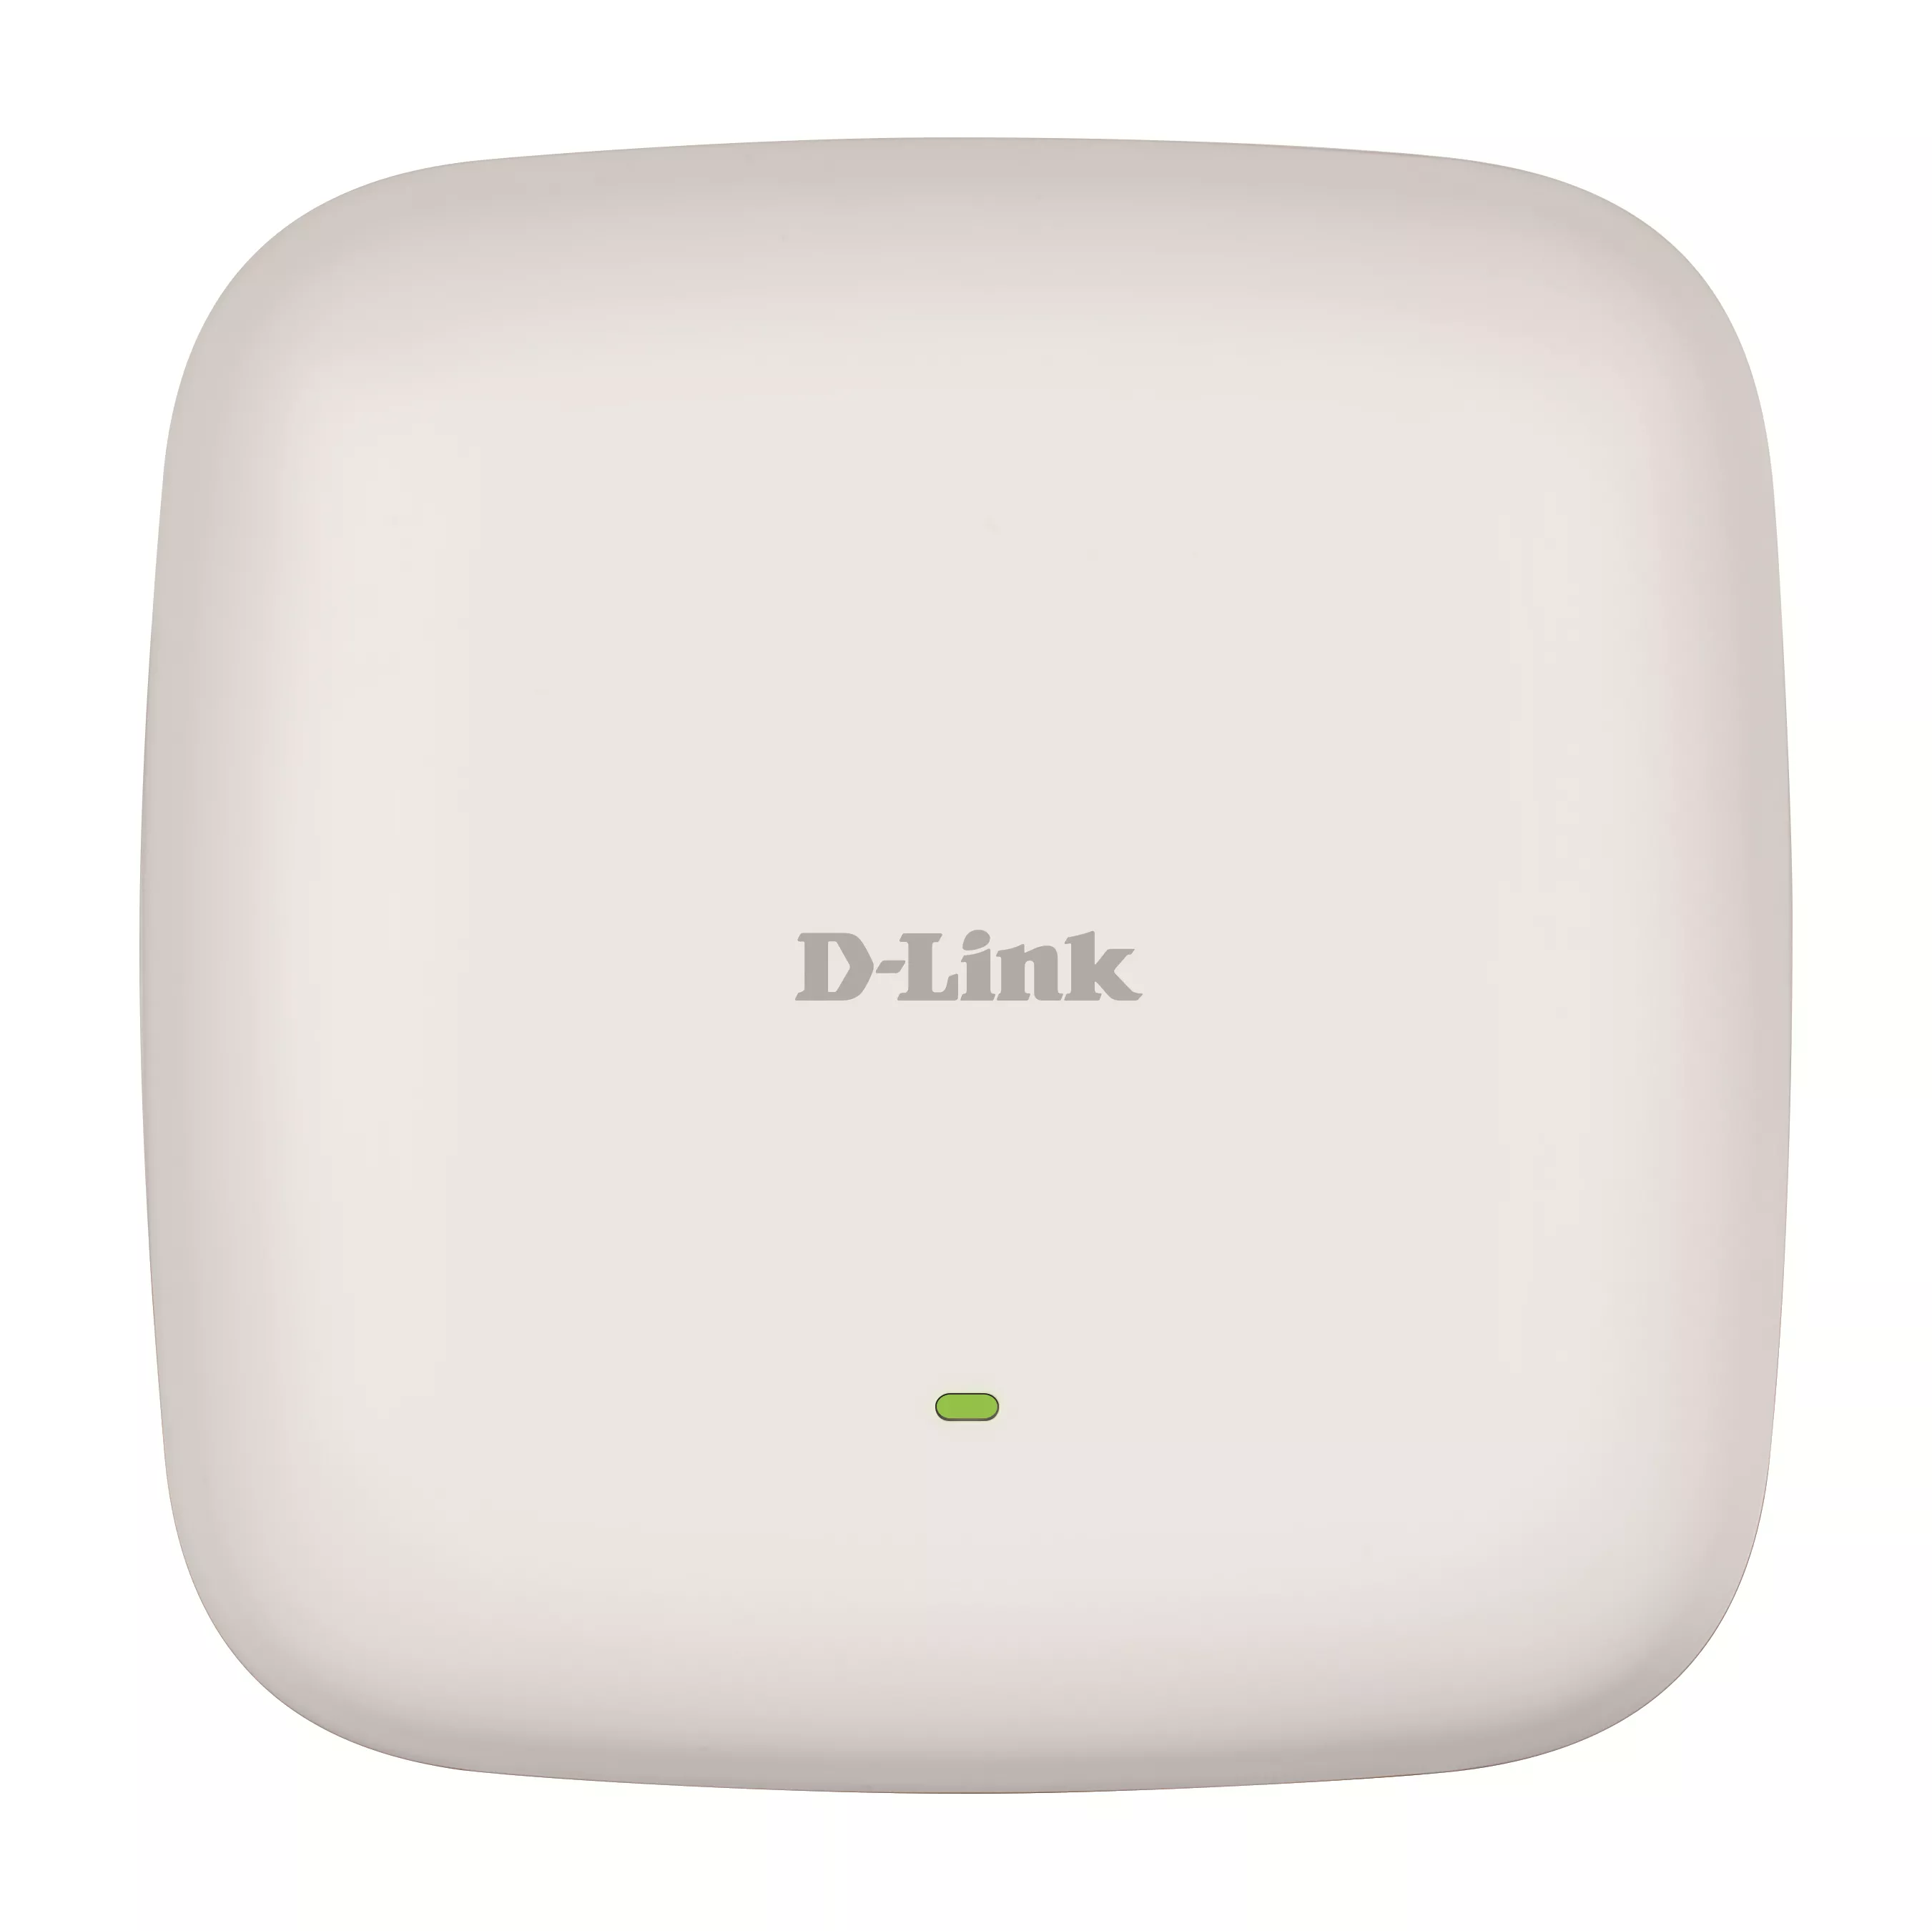 Revendeur officiel Accessoire Wifi D-LINK Unified AC1300 Wave 2 Dual Band Outdoor Access